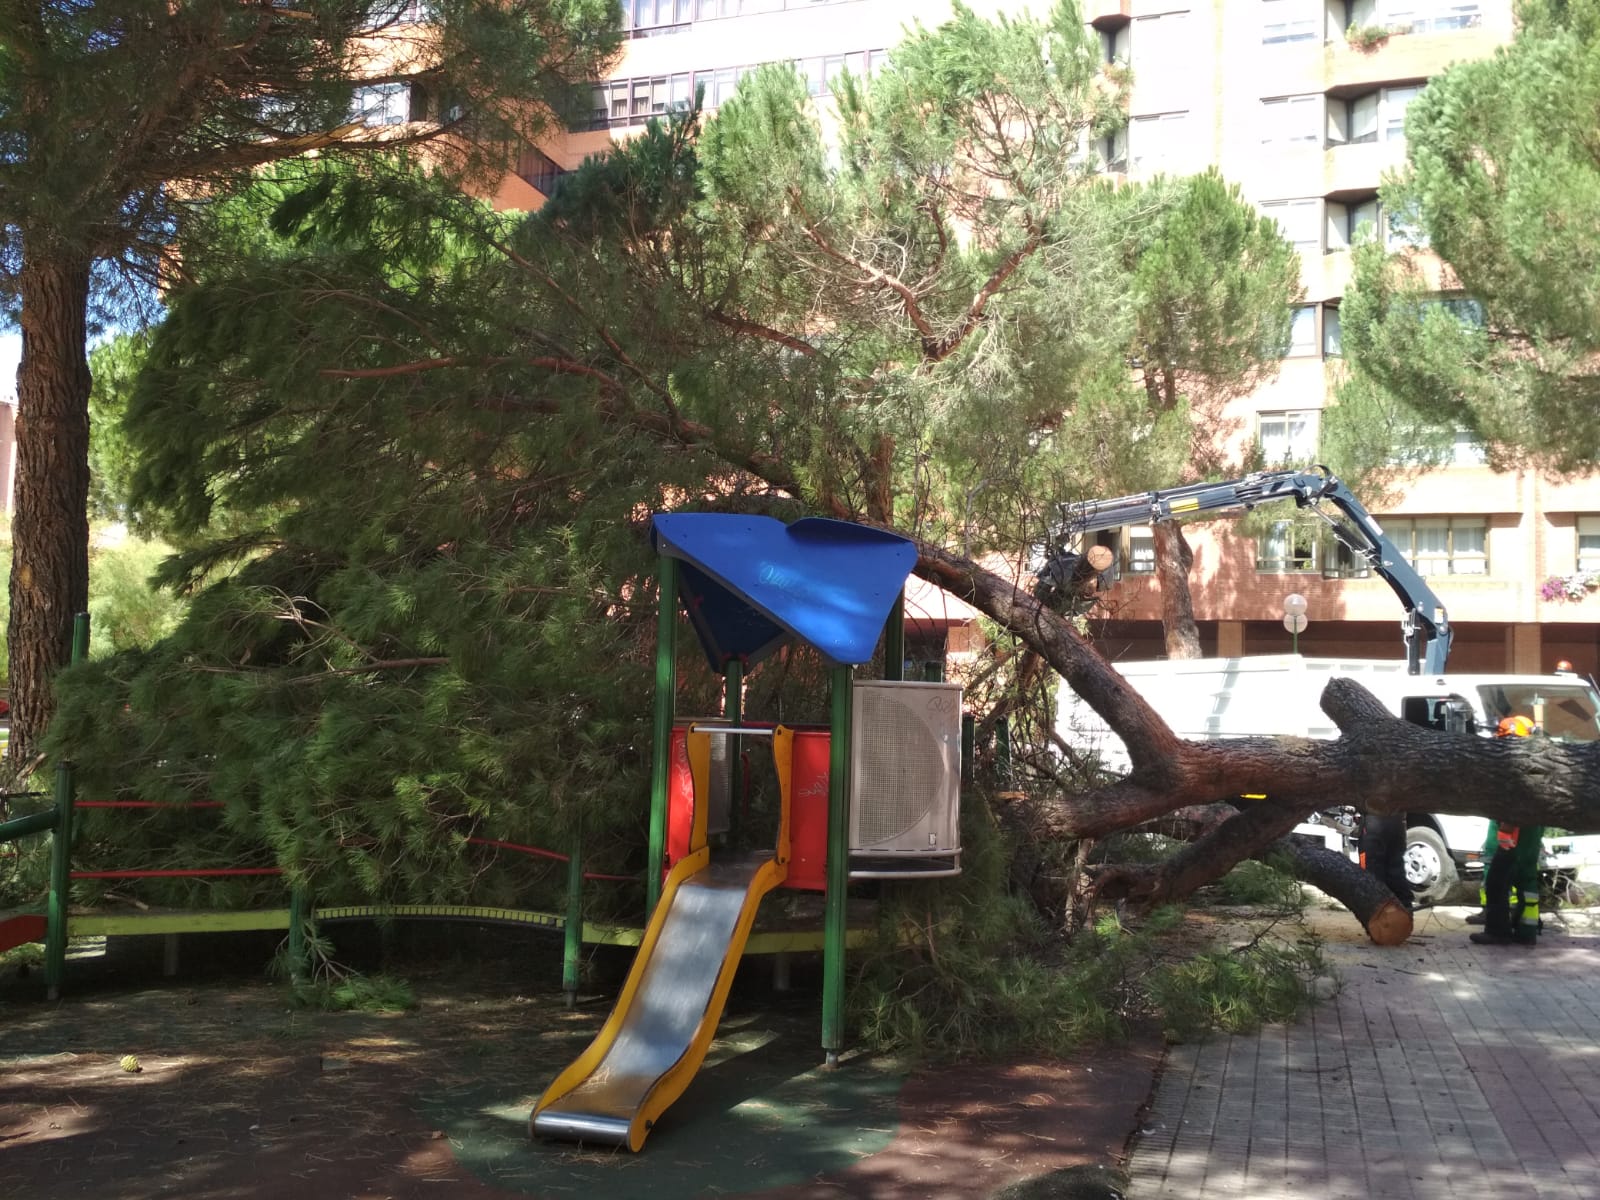 El pino ha caído sobre una zona de juegos infantiles